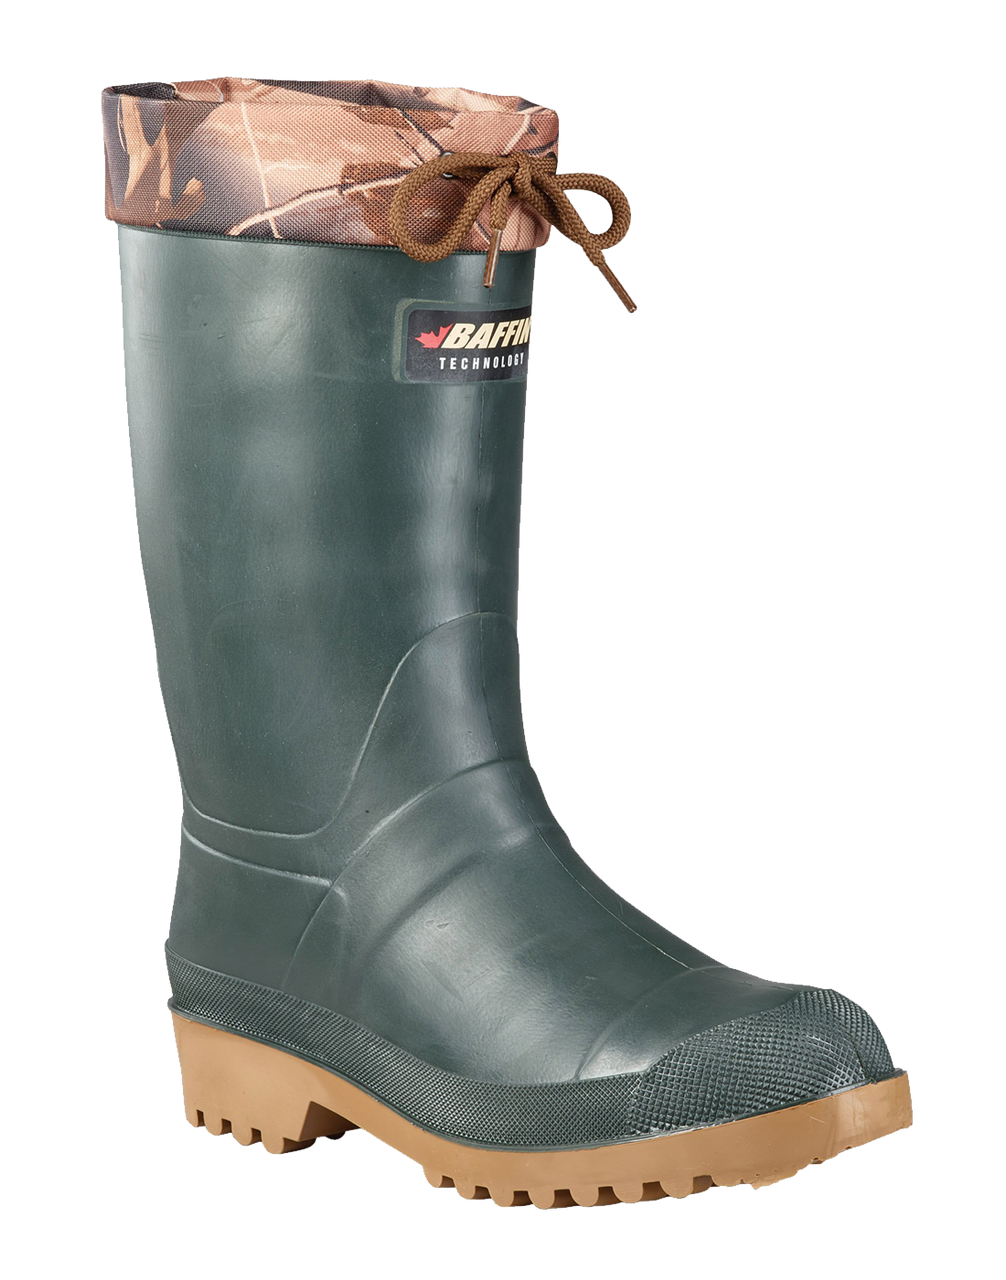 winter rain boots canada